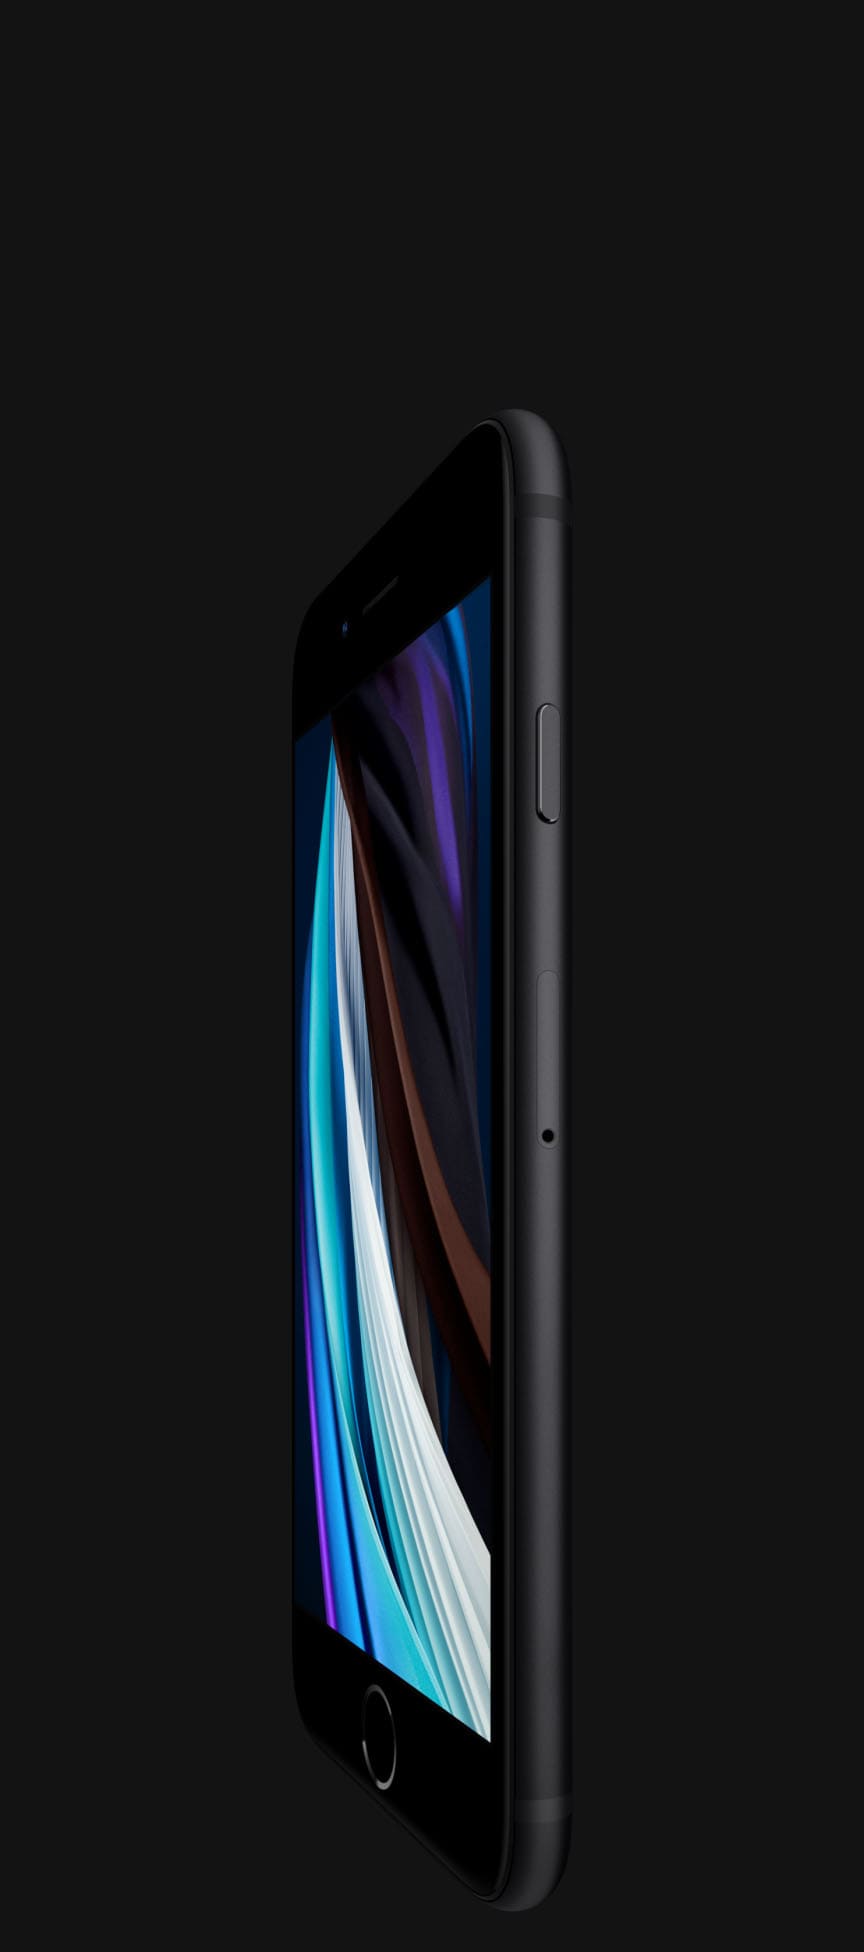 Великолепный дисплей Retina HD 4,7” - iPhone SE 2020